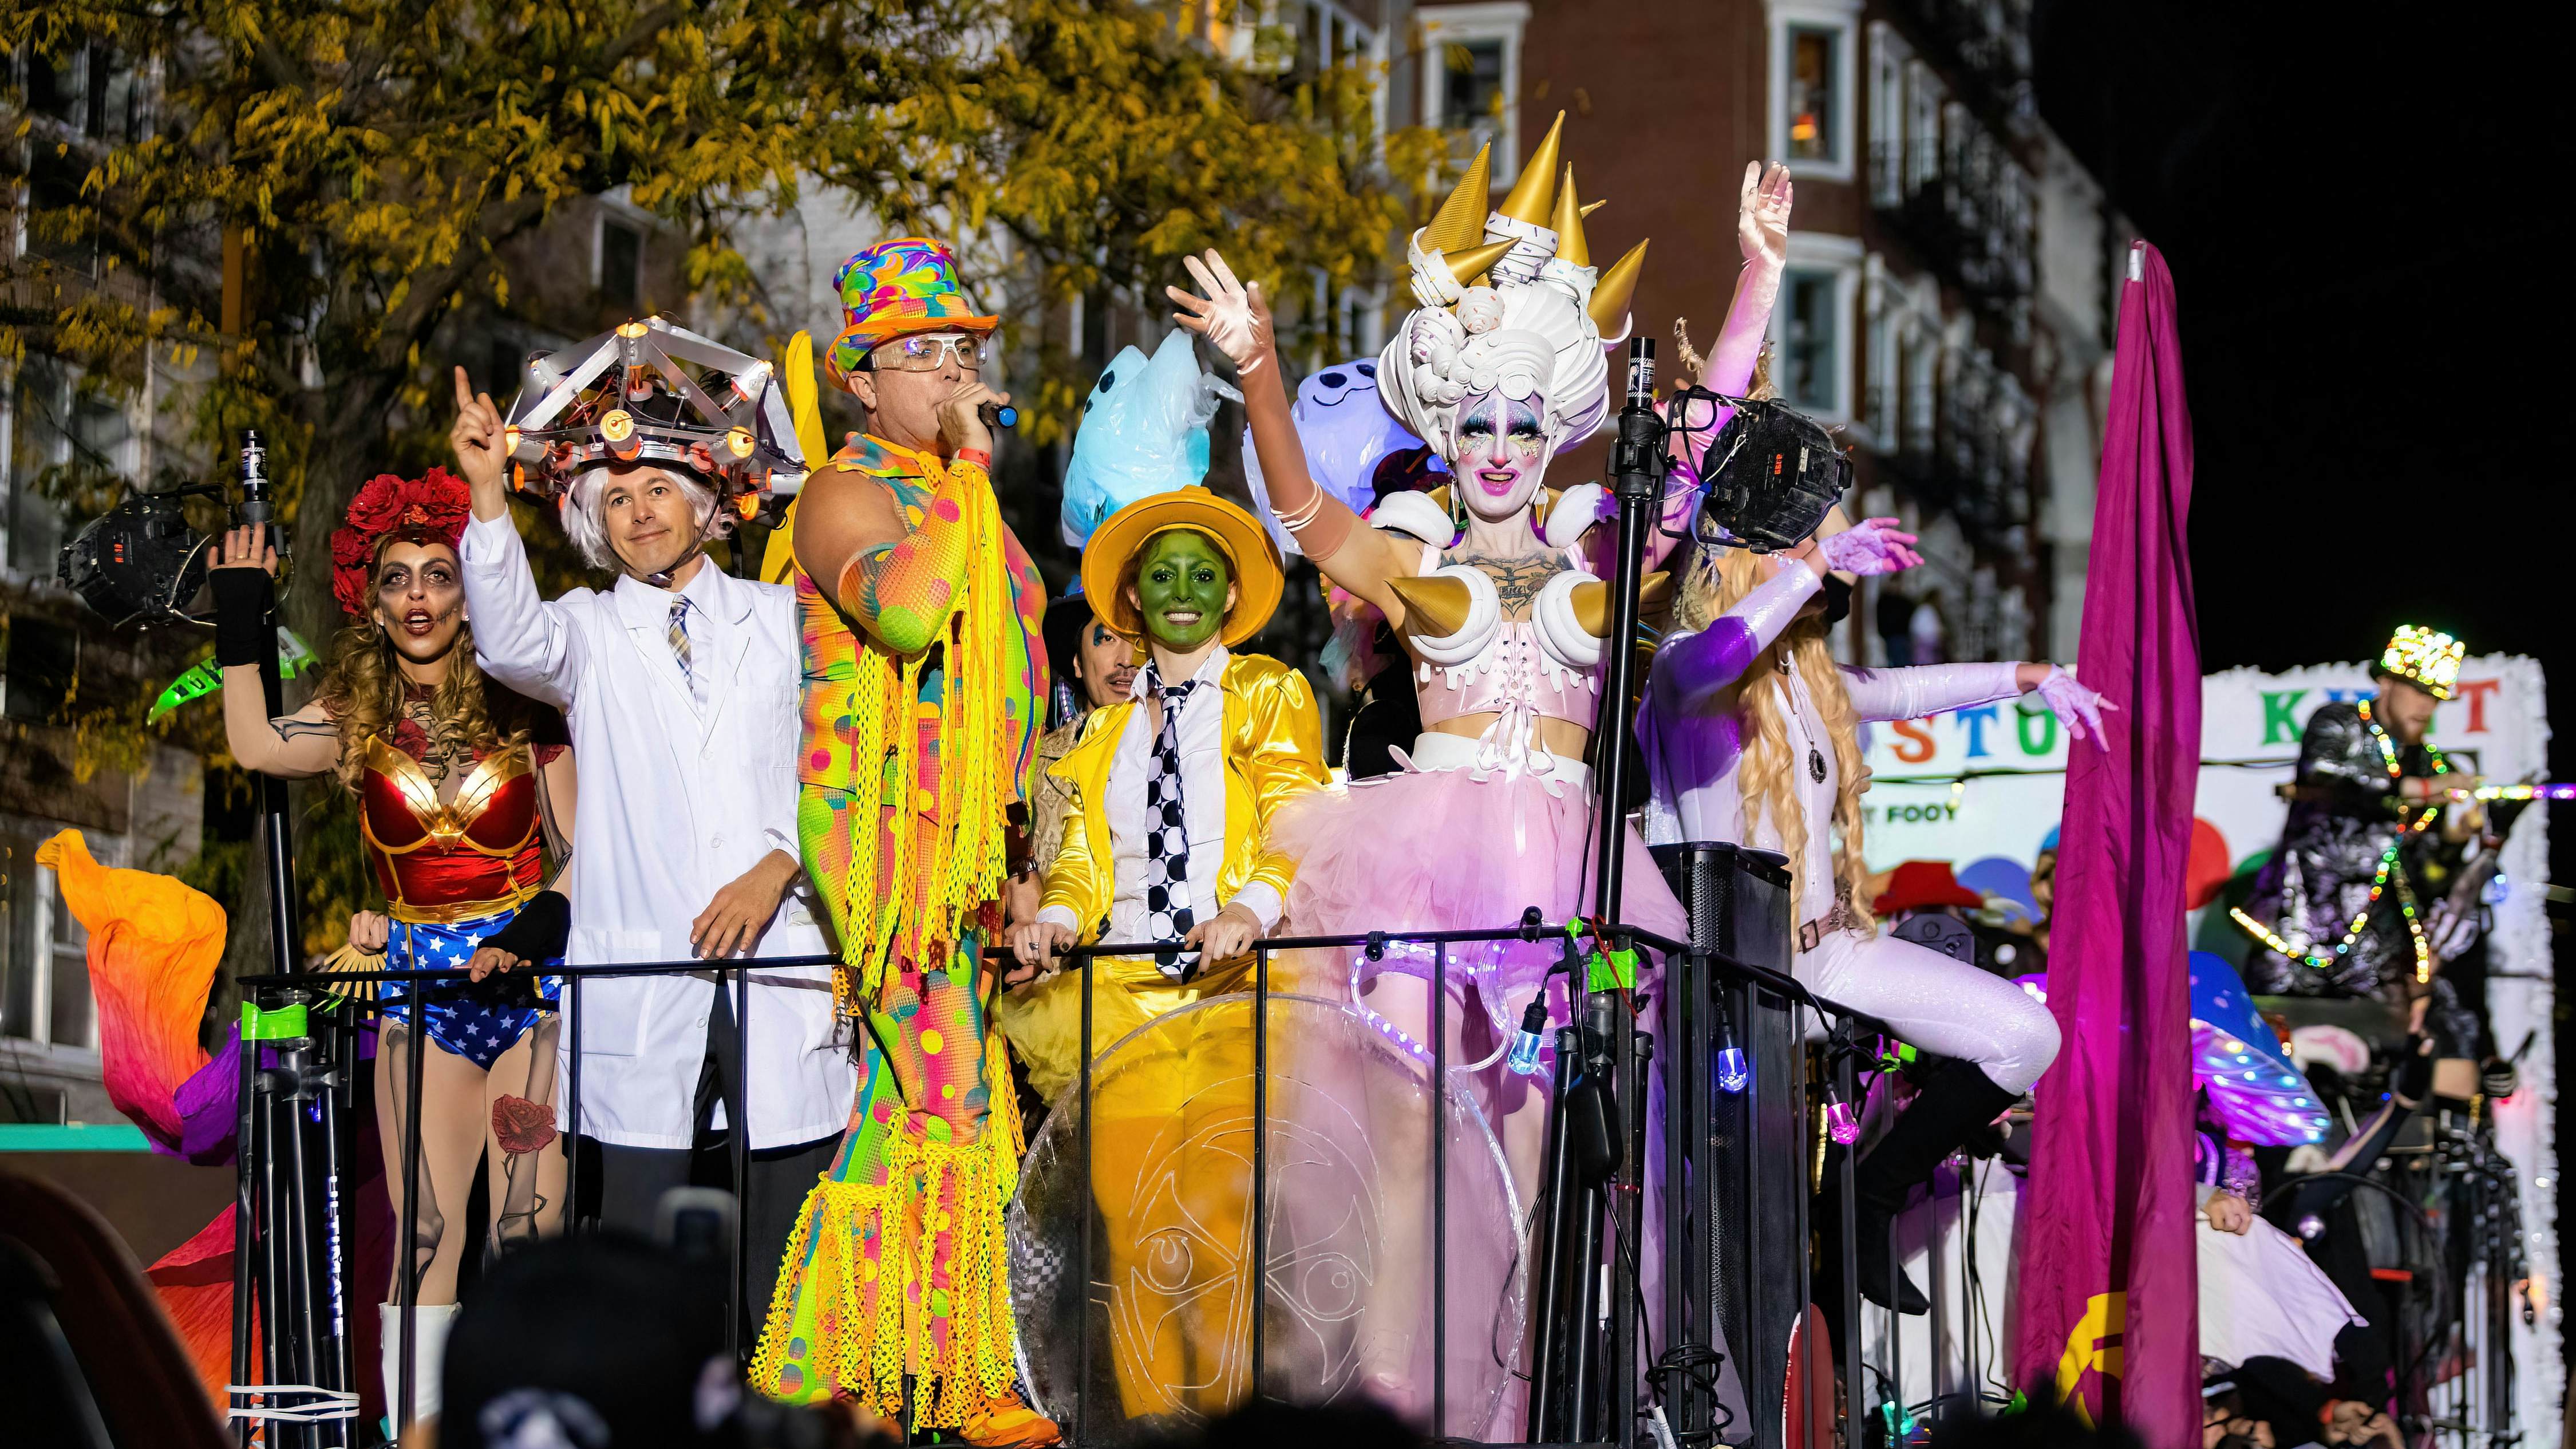 New York, NY - 31. října 2021: Krásné a děsivé kostýmy na Halloweenském průvodu NYC Village;  Shutterstock ID 2068200707;  váš: Zach Laks;  gl: 65050;  netsuite: Online Editorial;  plné: Objevte